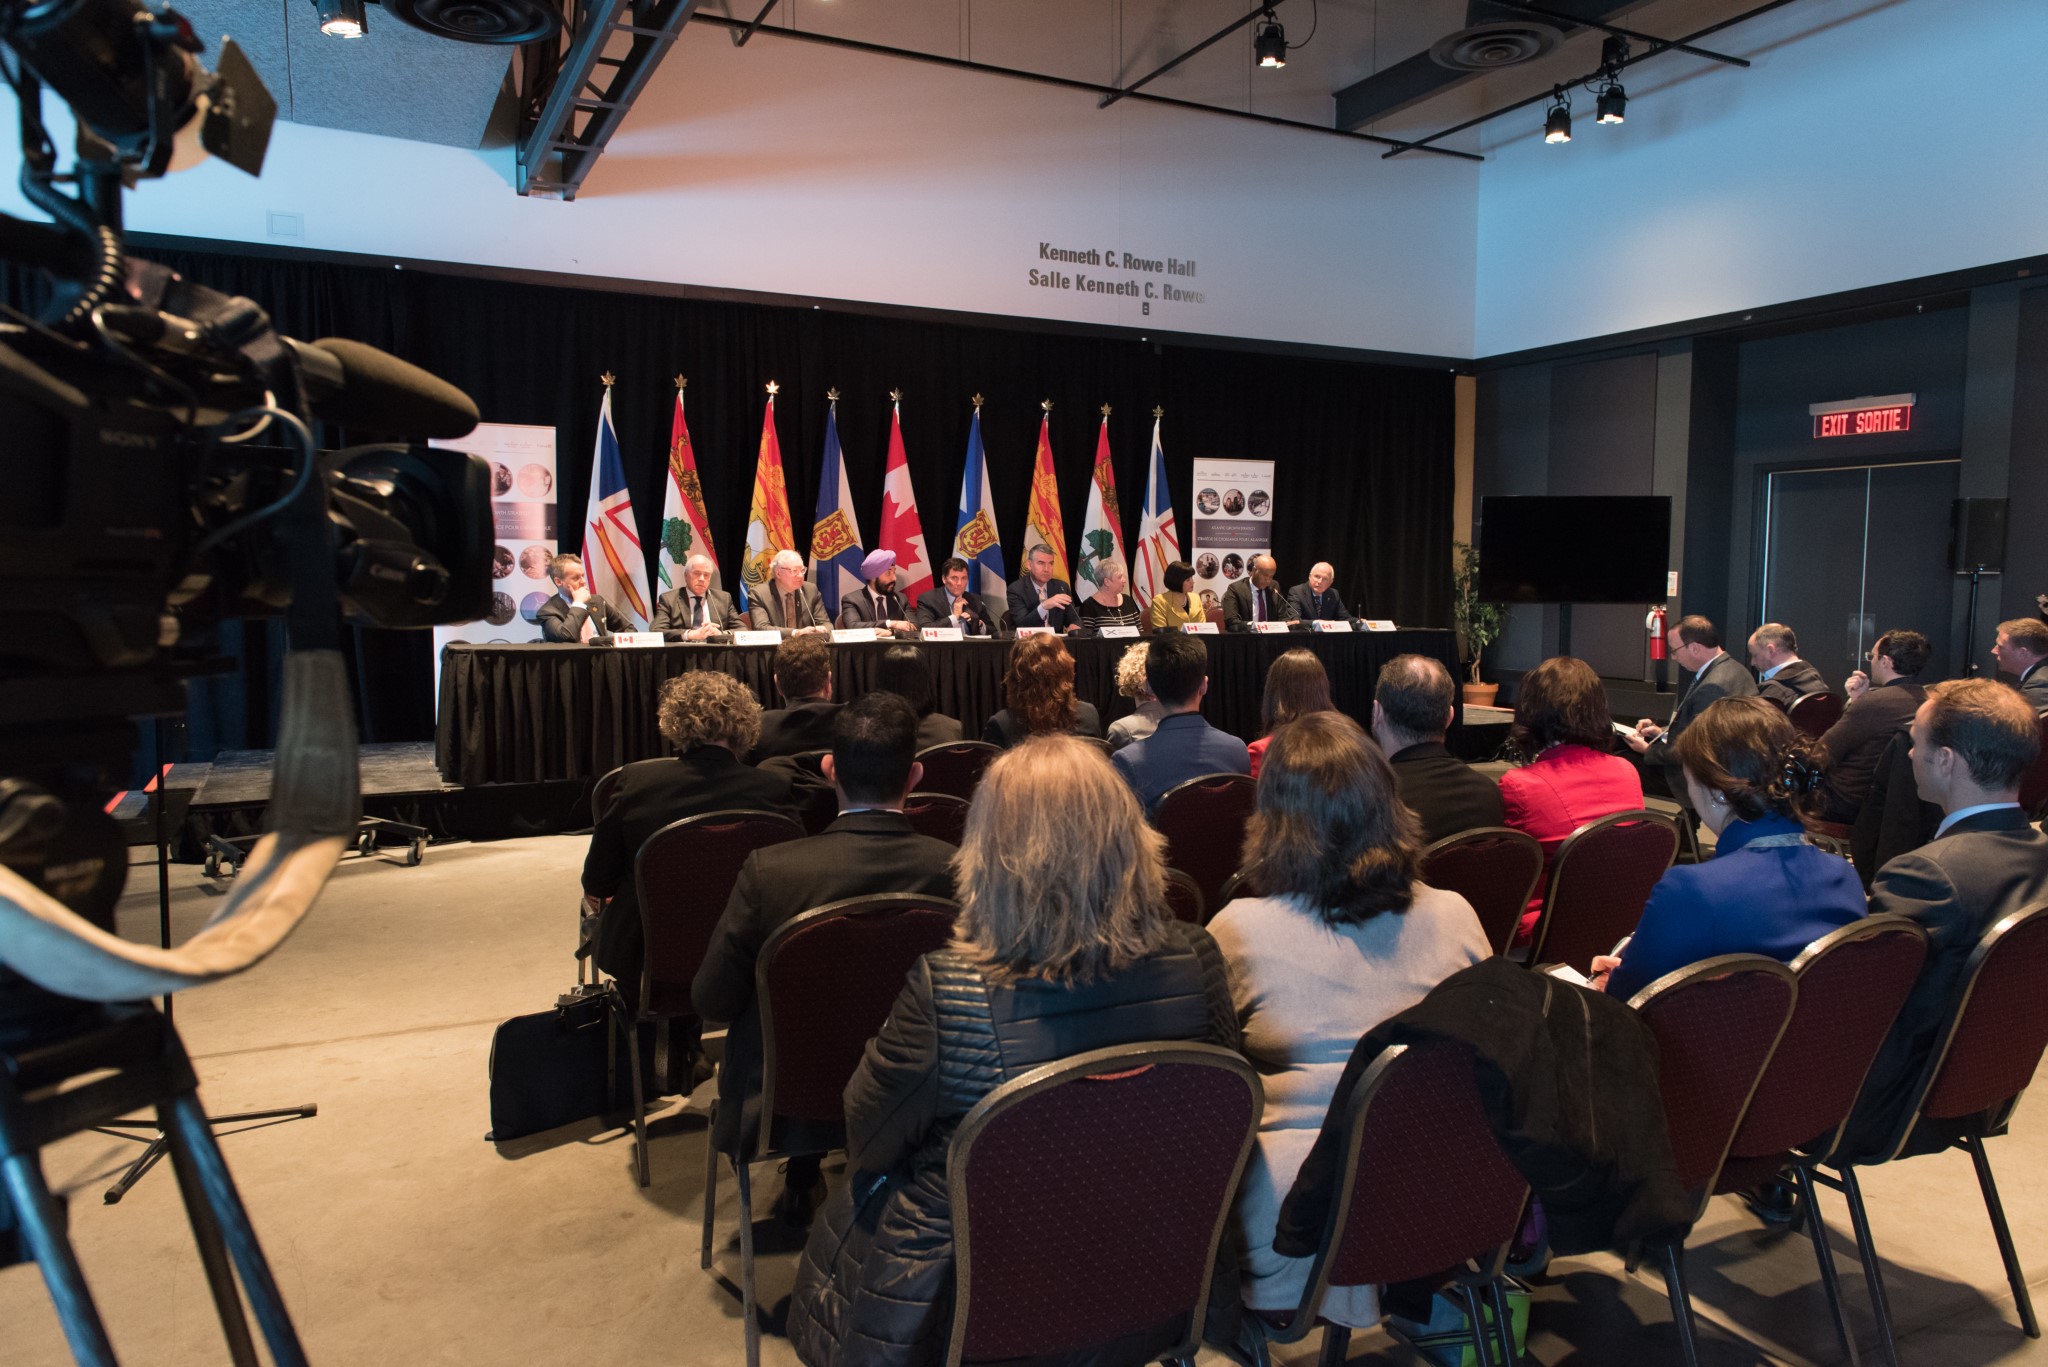 Le 1er mars 2019 – Les ministres et premiers ministres se sont rencontrés à Halifax, en Nouvelle-Écosse, pour faire le point sur l’incidence positive de la Stratégie de croissance pour l’Atlantique et pour dresser le profil de l’avenir de l’énergie propre de la région qui misera sur une électricité plus durable, plus fiable et plus abordable pour le Canada atlantique. La discussion a aussi porté sur la croissance de l’industrie alimentaire de la région, l’harmonisation de la réglementation et les écarts de compétences persistants à combler.